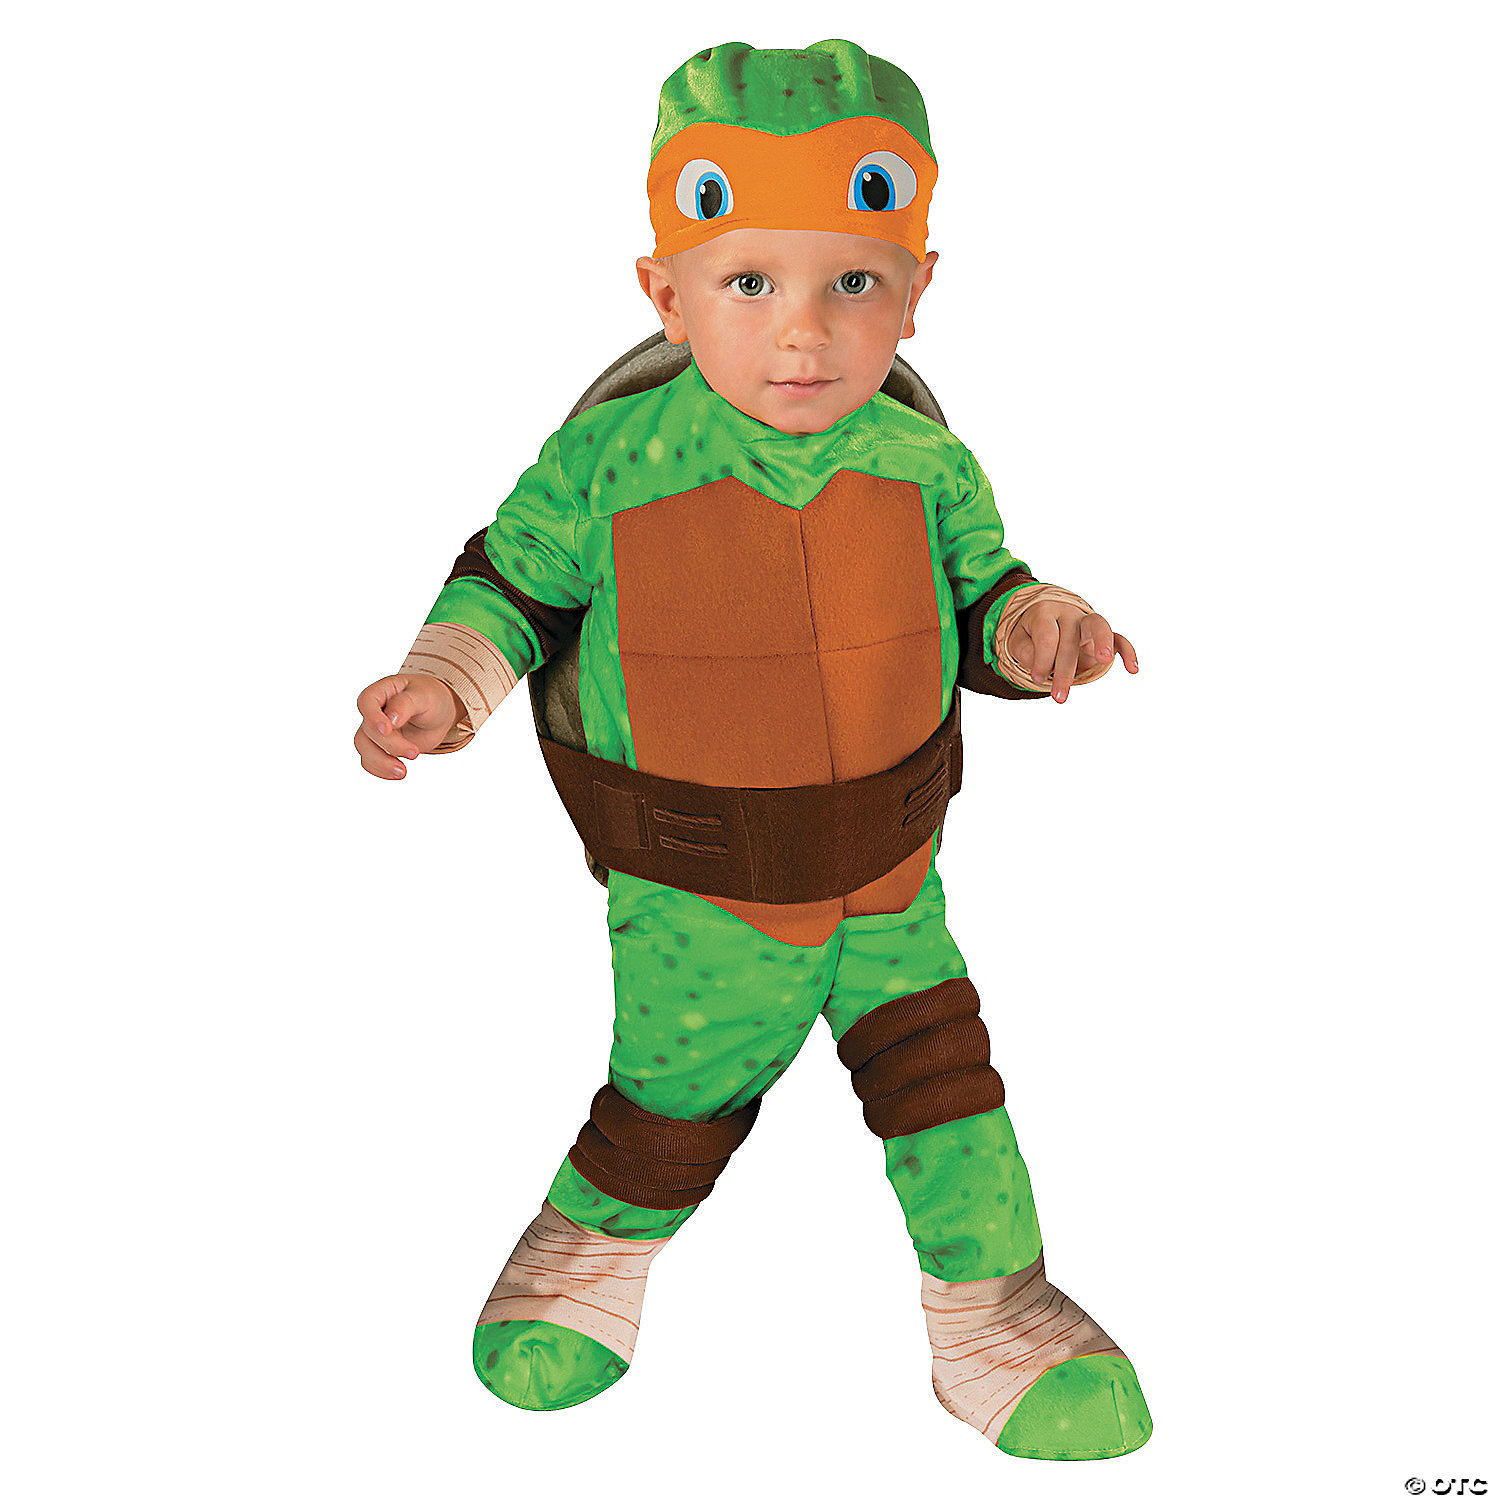 https://s7.orientaltrading.com/is/image/OrientalTrading/VIEWER_ZOOM/baby/toddler-teenage-mutant-ninja-turtles-michelangelo-costume~13770013